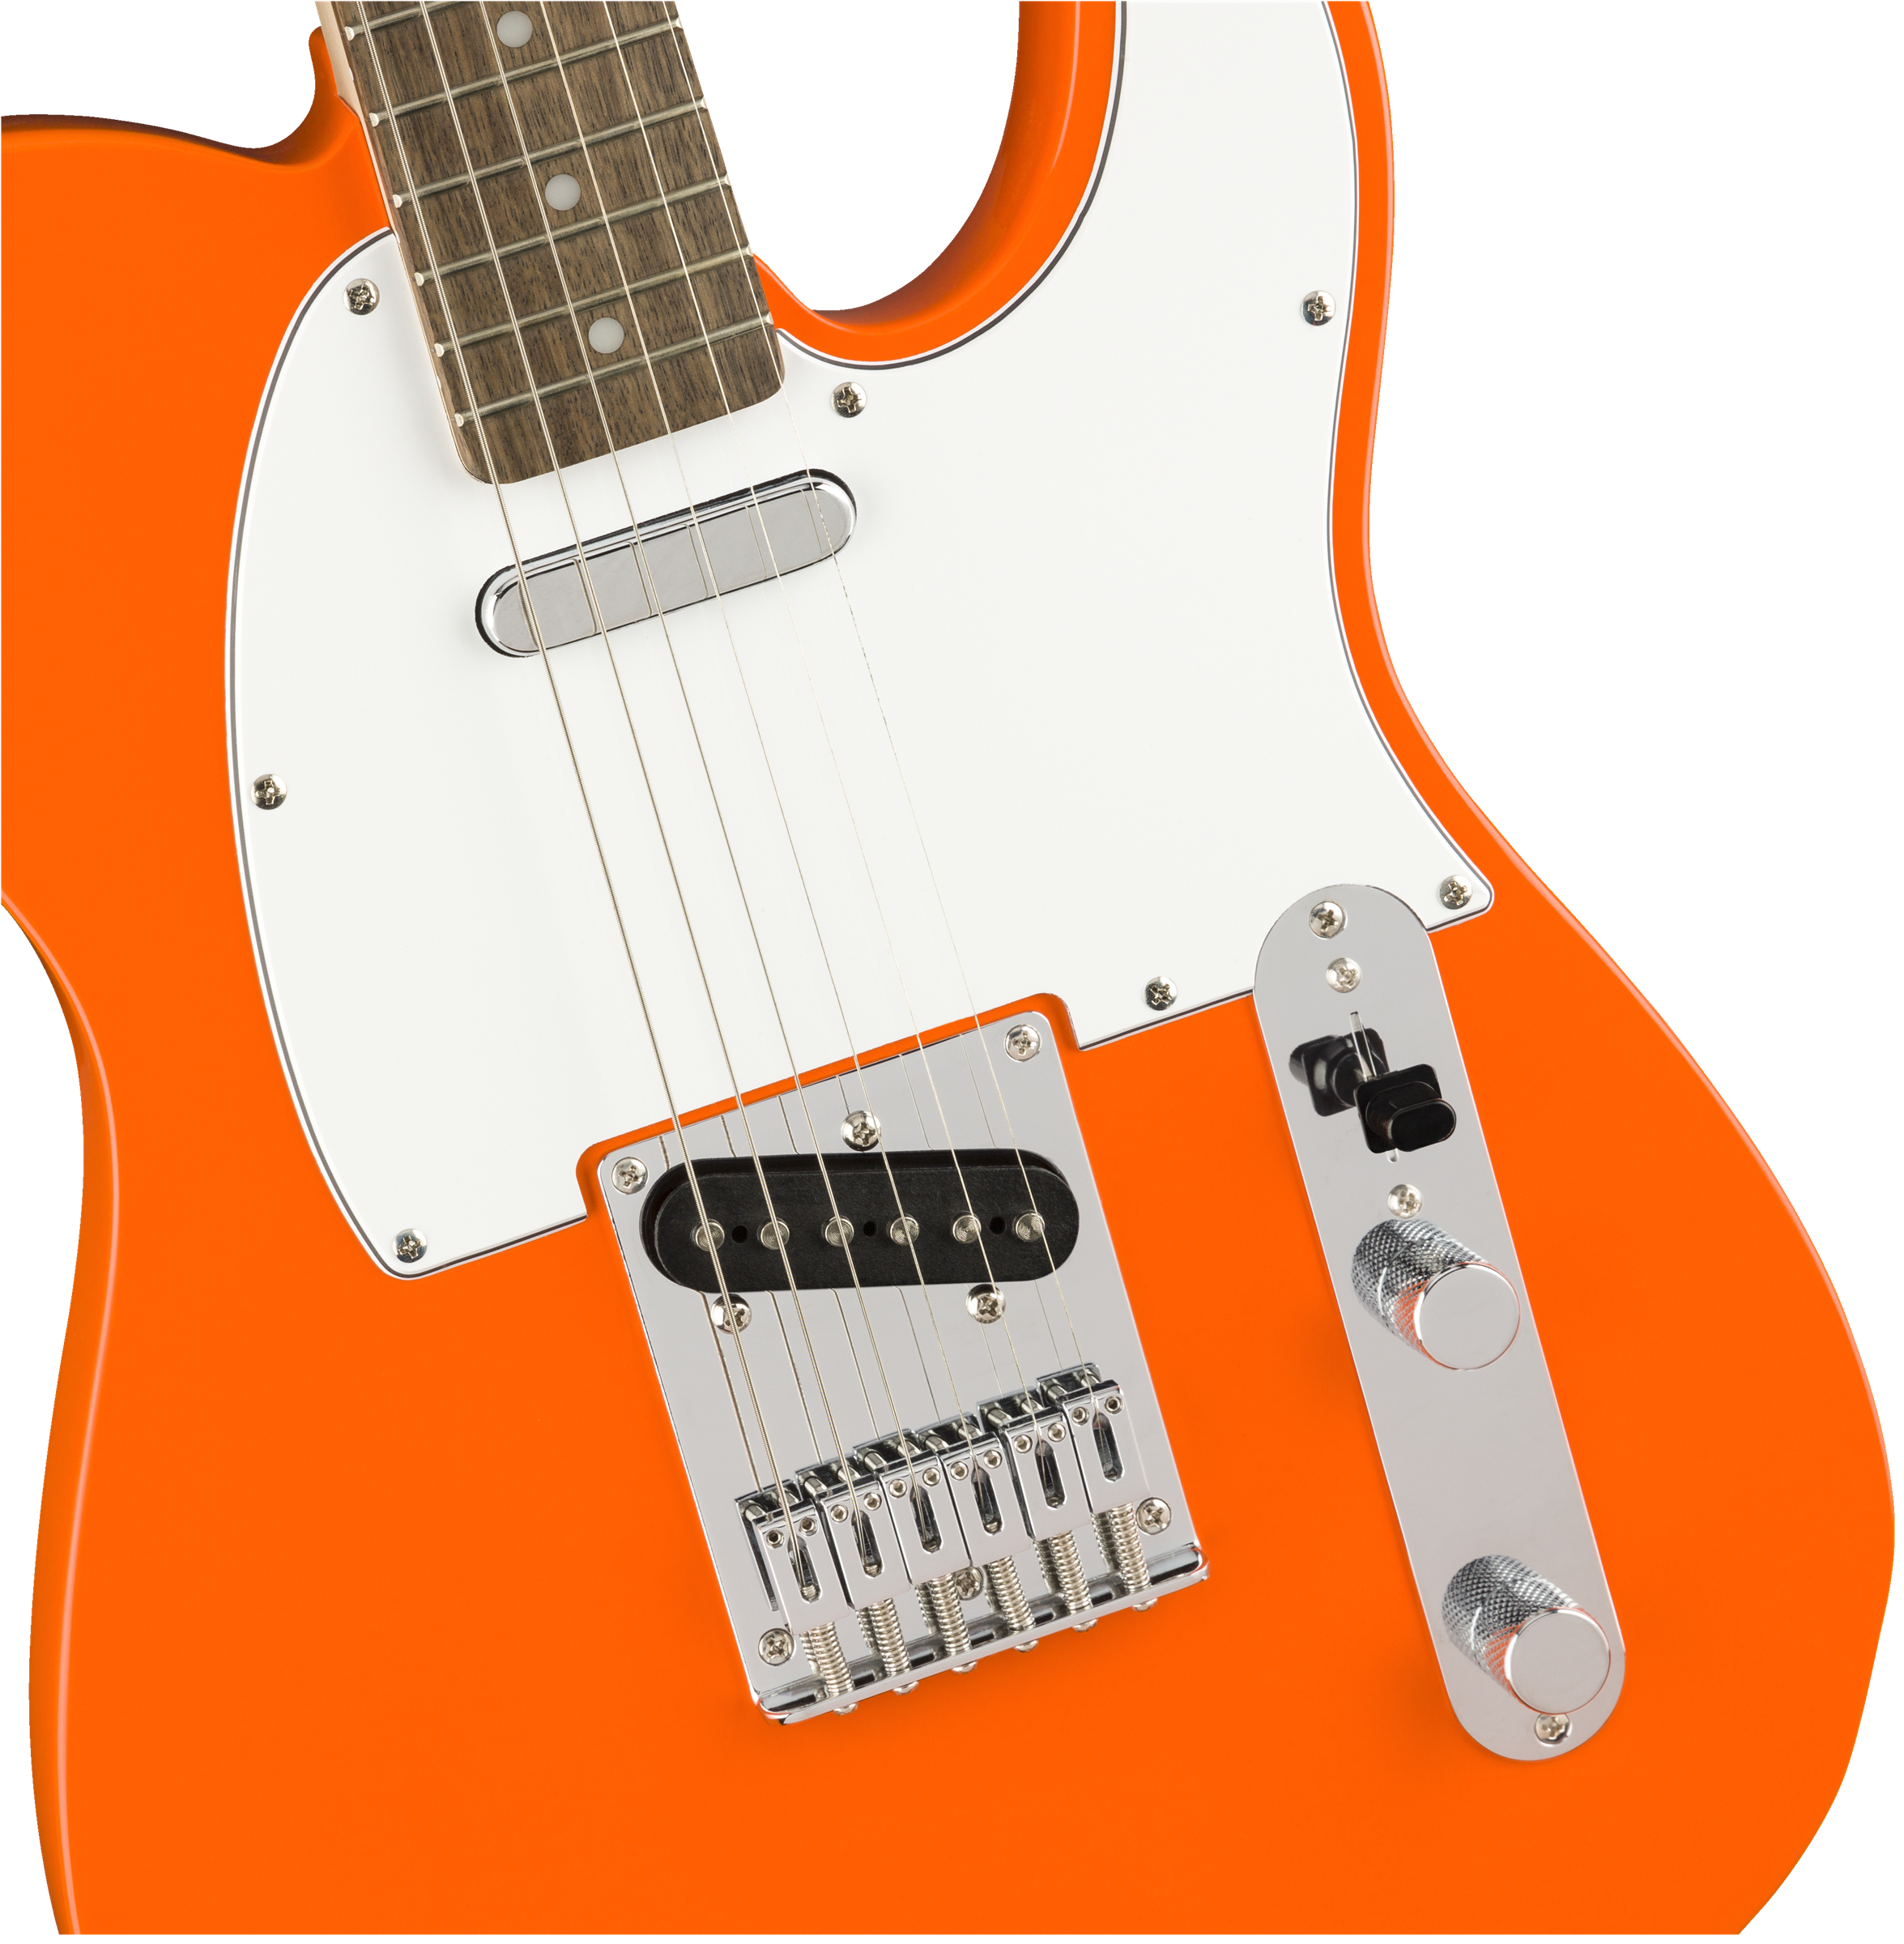 Fender Squier Affinity Series Telecaster, Laurel FB, Competition Orange